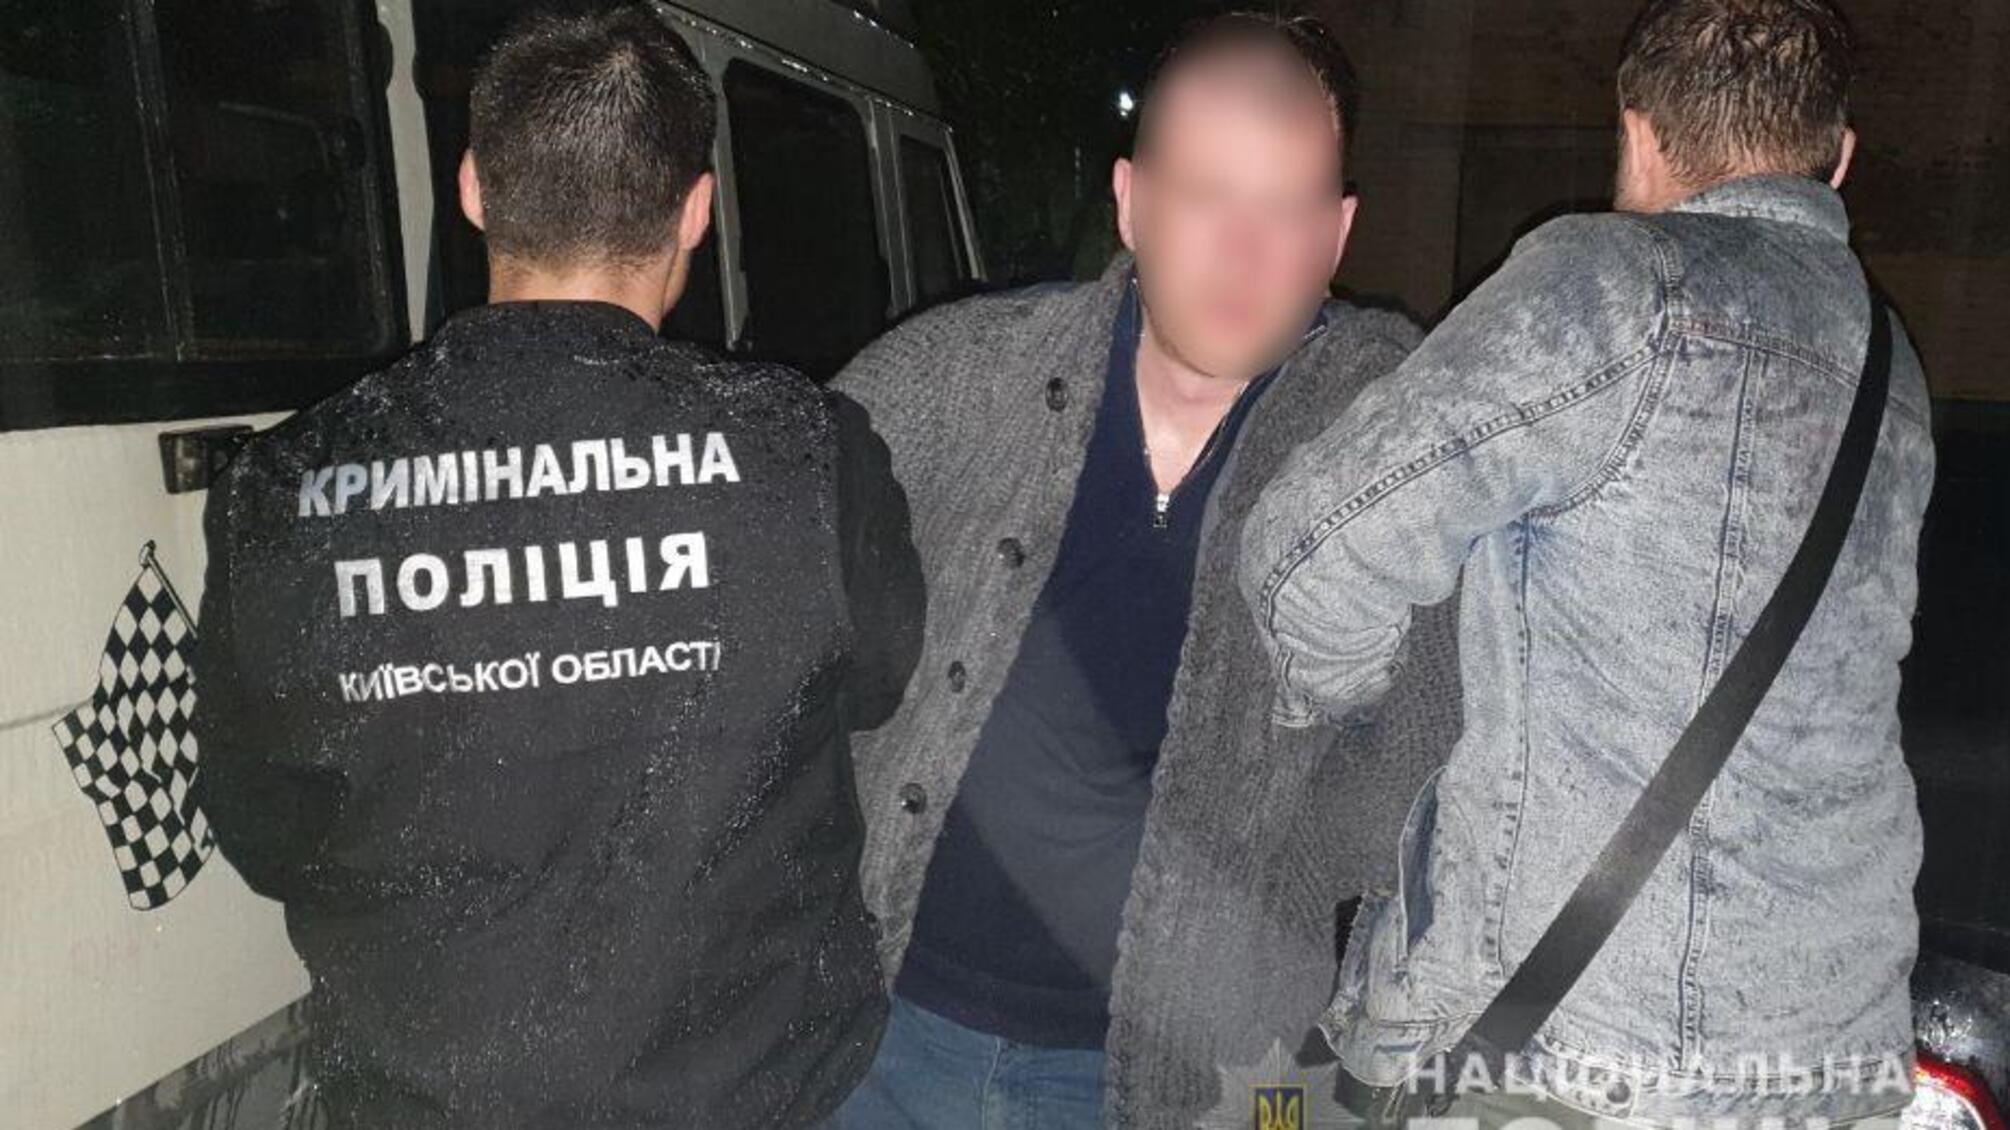 Поліція Київщини затримала псевдоперевізників, які незаконно заволоділи товаром на суму 5 млн гривень